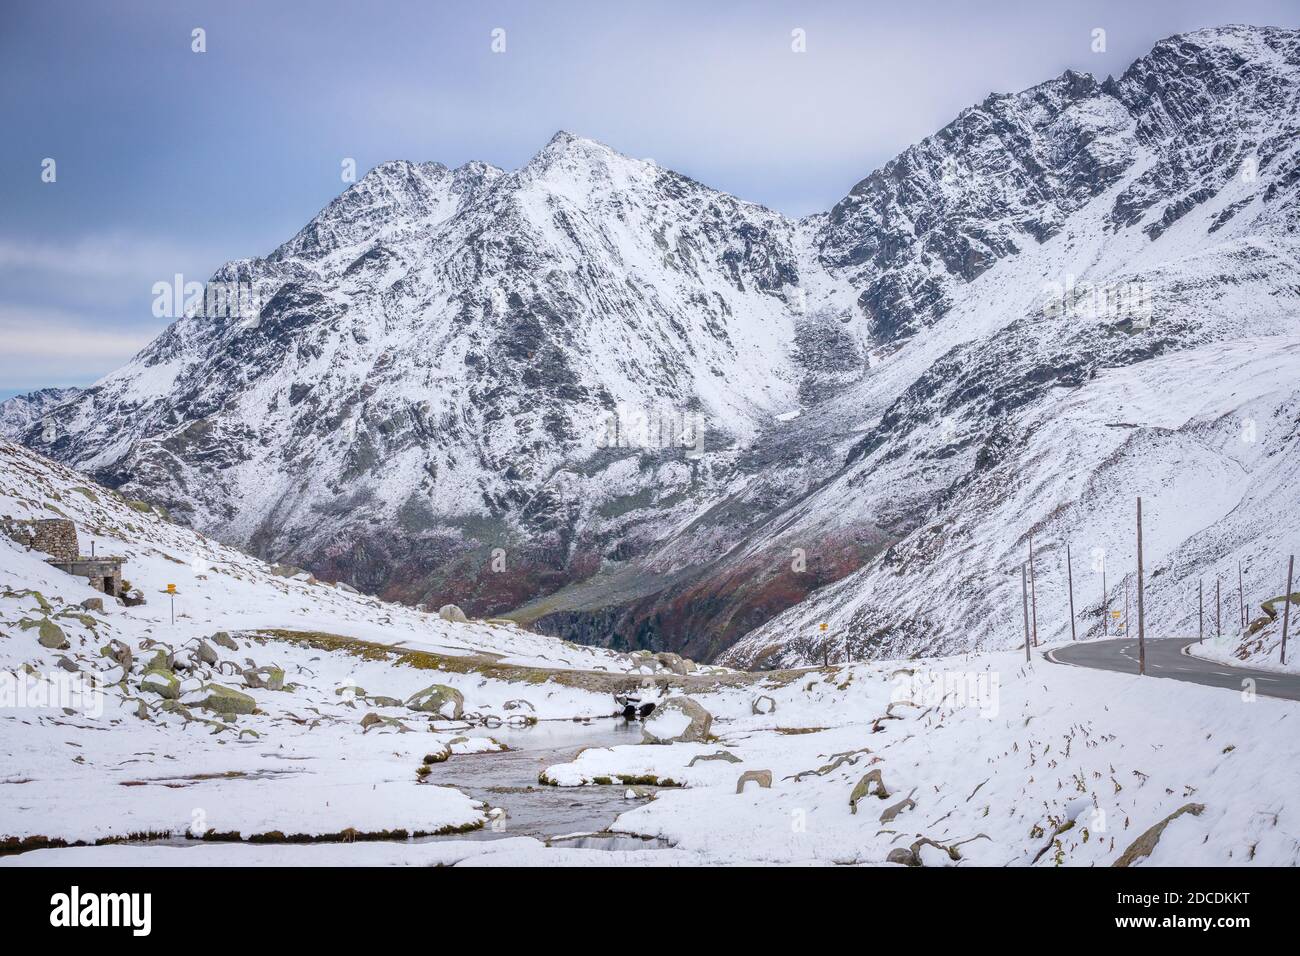 La nieve ha caído a finales del verano, a principios del otoño en el Flüela Pass (Suiza). Es un alto paso de montaña en los Alpes suizos en Graubünden Foto de stock